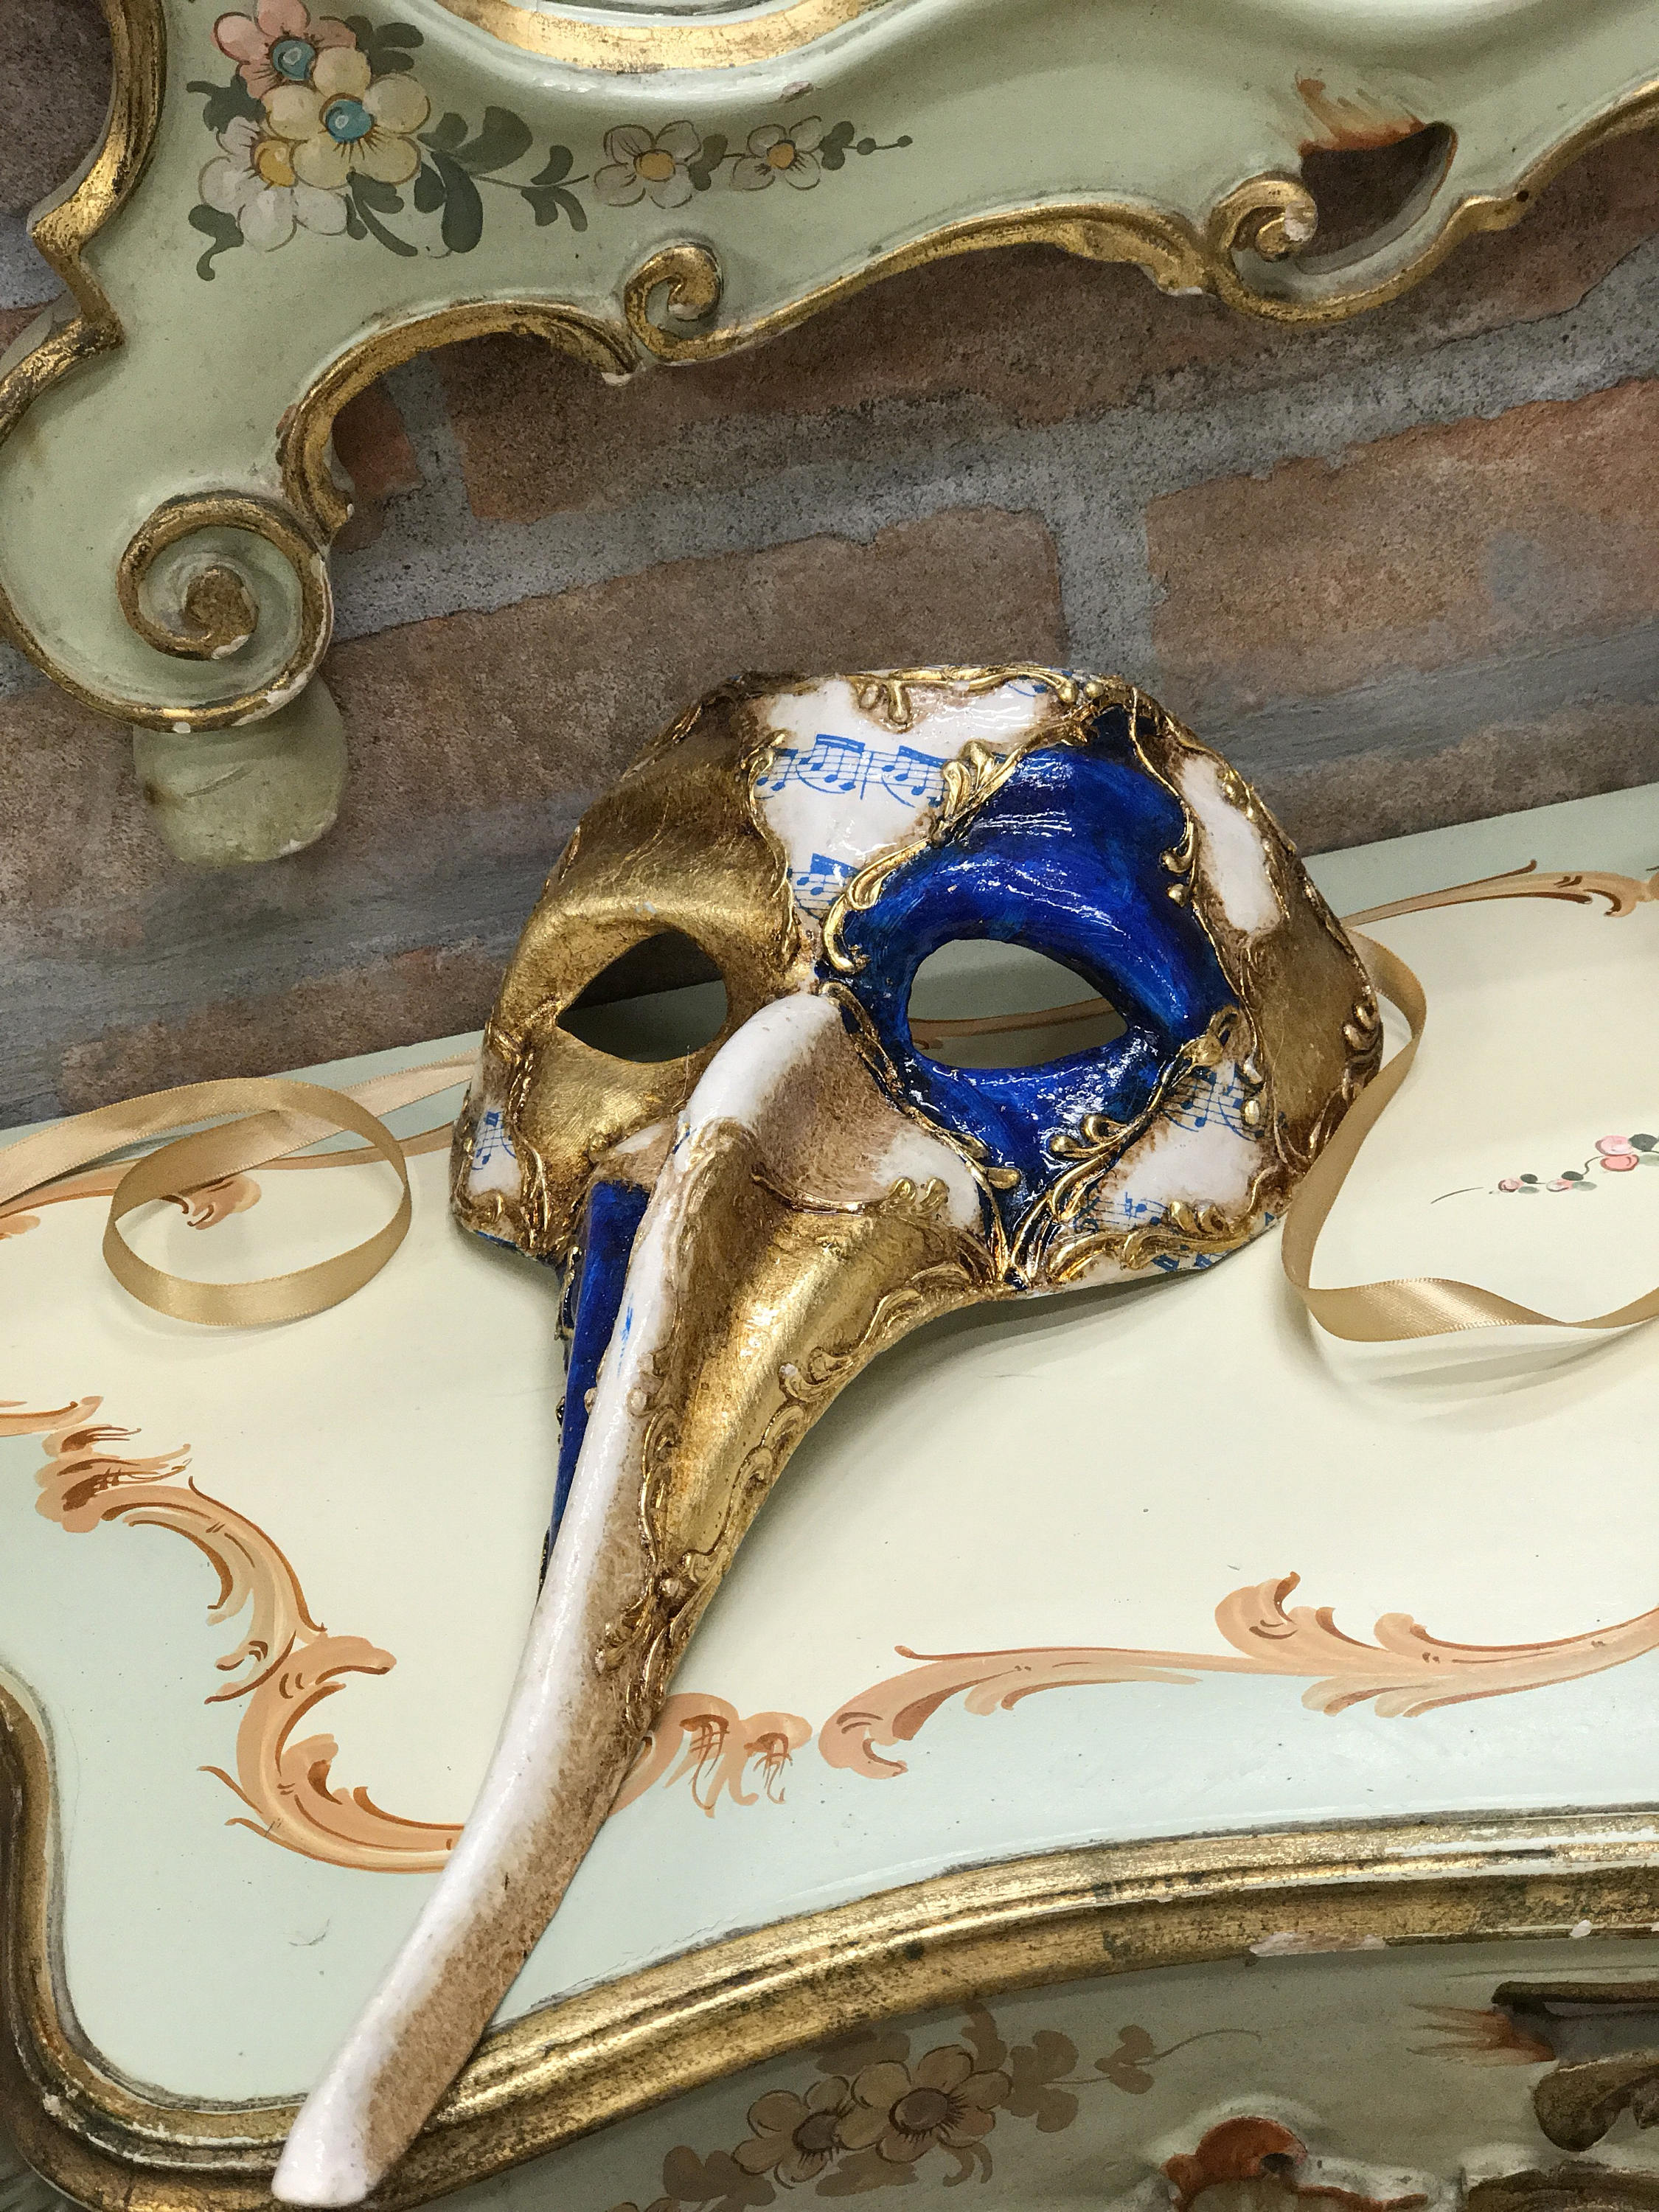 Zanni Venetian Mask, Commedia Del Arte Mask, Carnival Mask -  Hong Kong